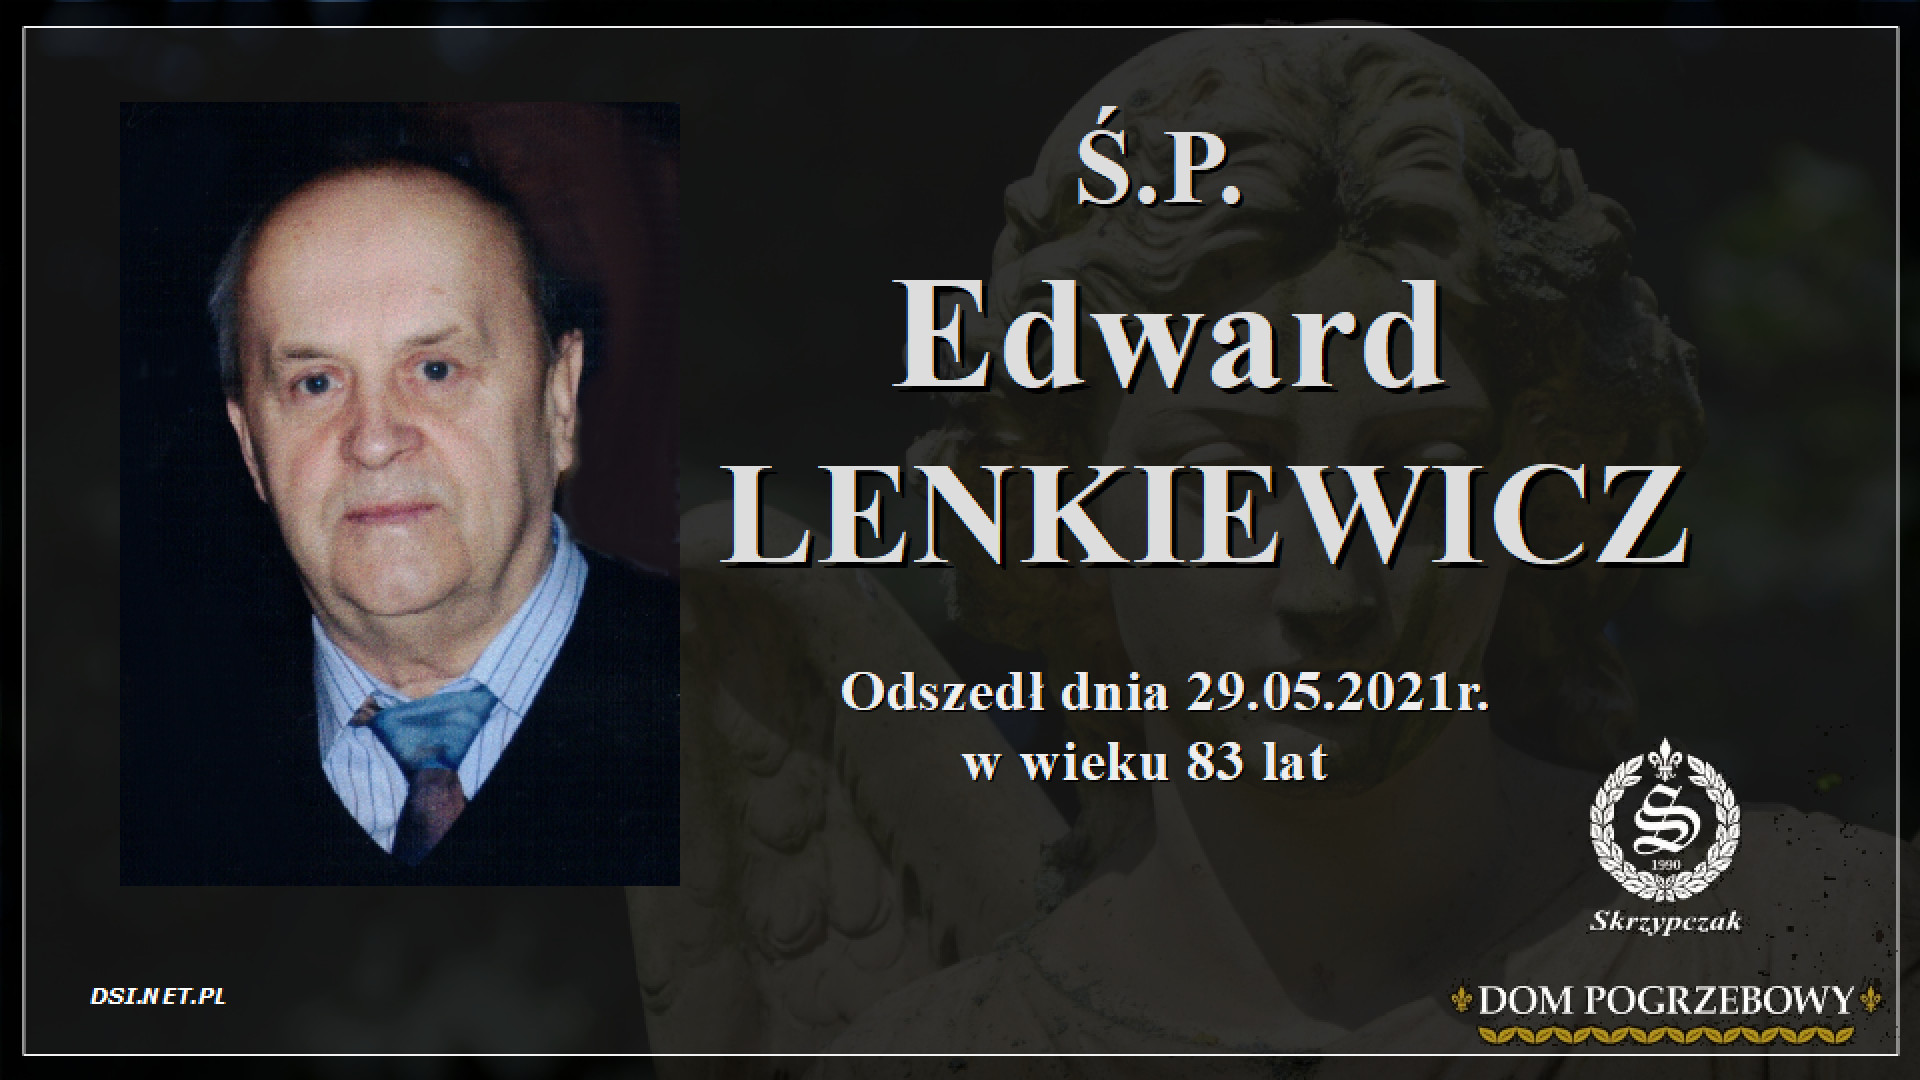 Ś.P. Edward Lenkiewicz